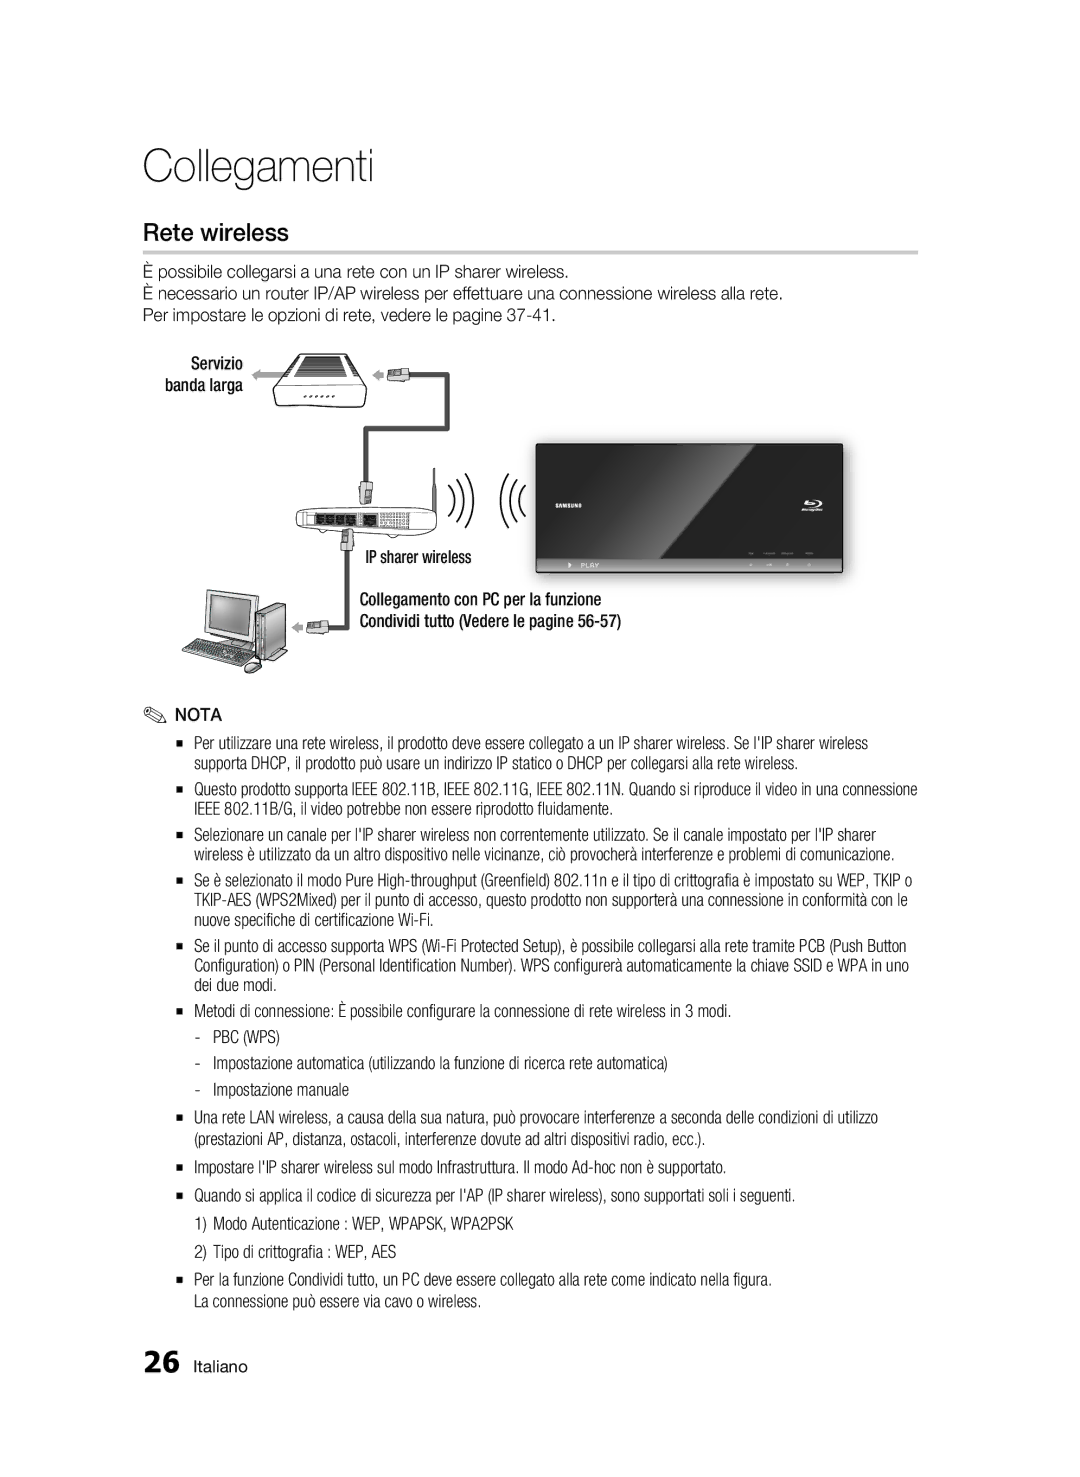 Samsung BD-C7500/XEF, BD-C7500/EDC manual Rete wireless, Pbc Wps, Tipo di crittografia WEP, AES 